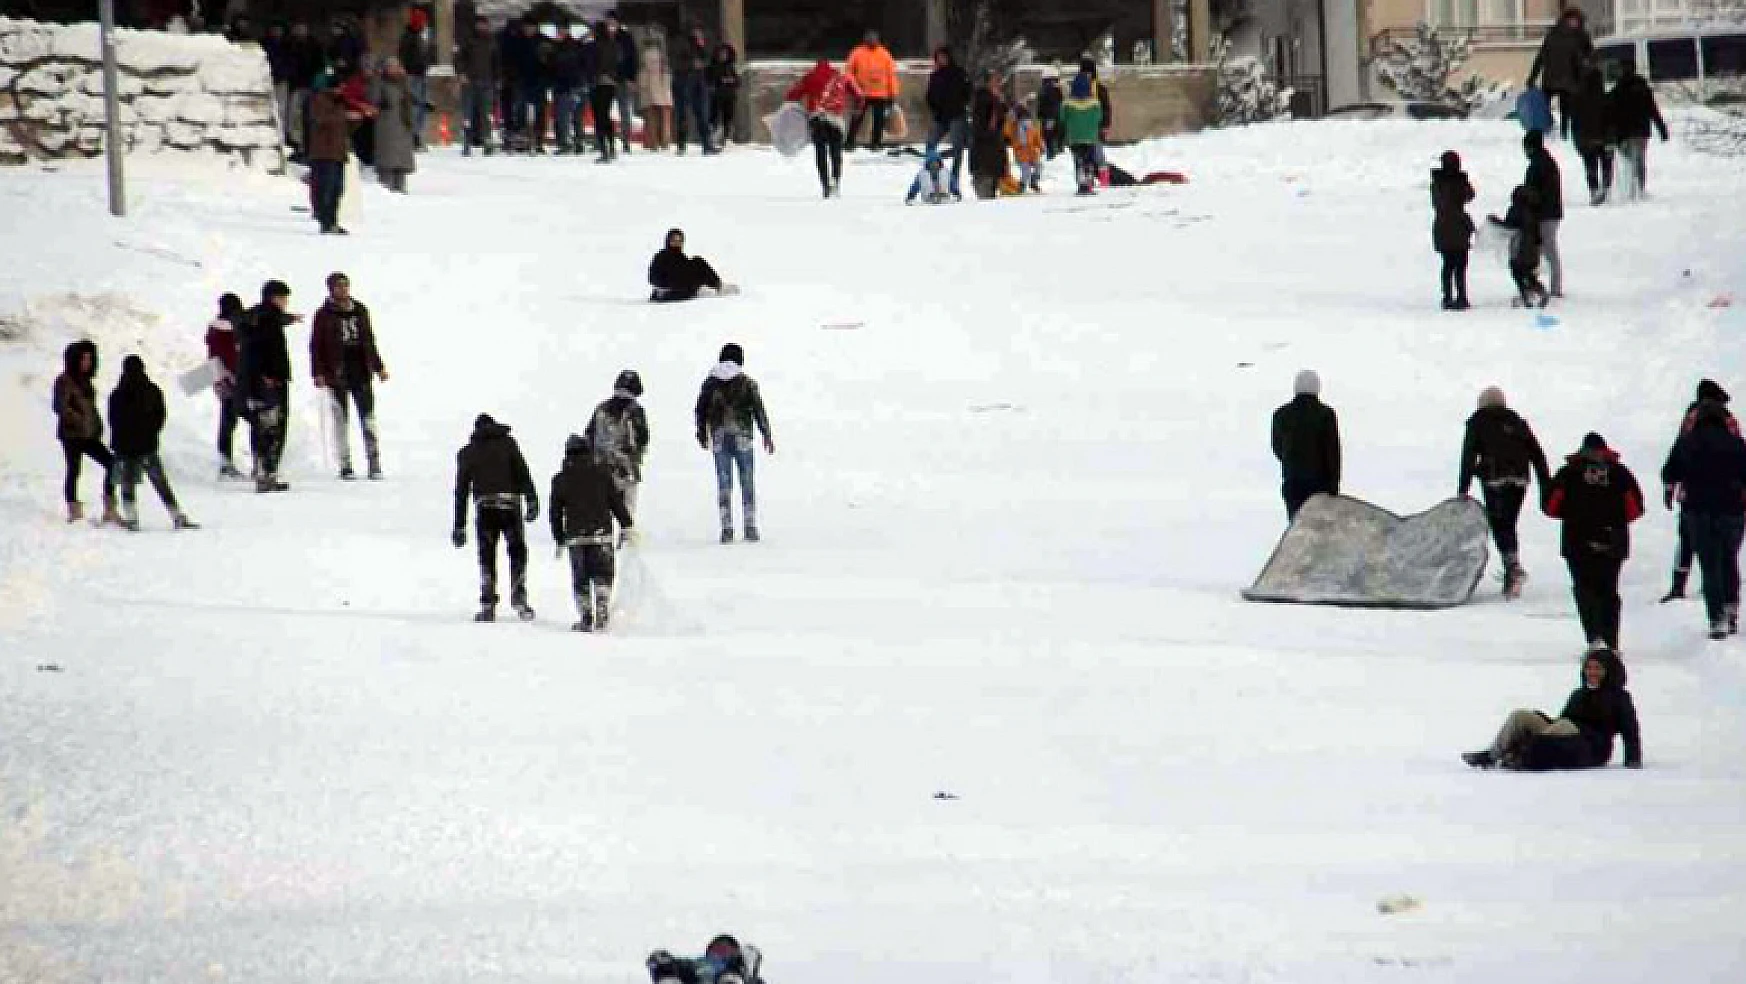 Beyşehir'in doğal kayak merkezi kayak severlerin gözdesi oldu